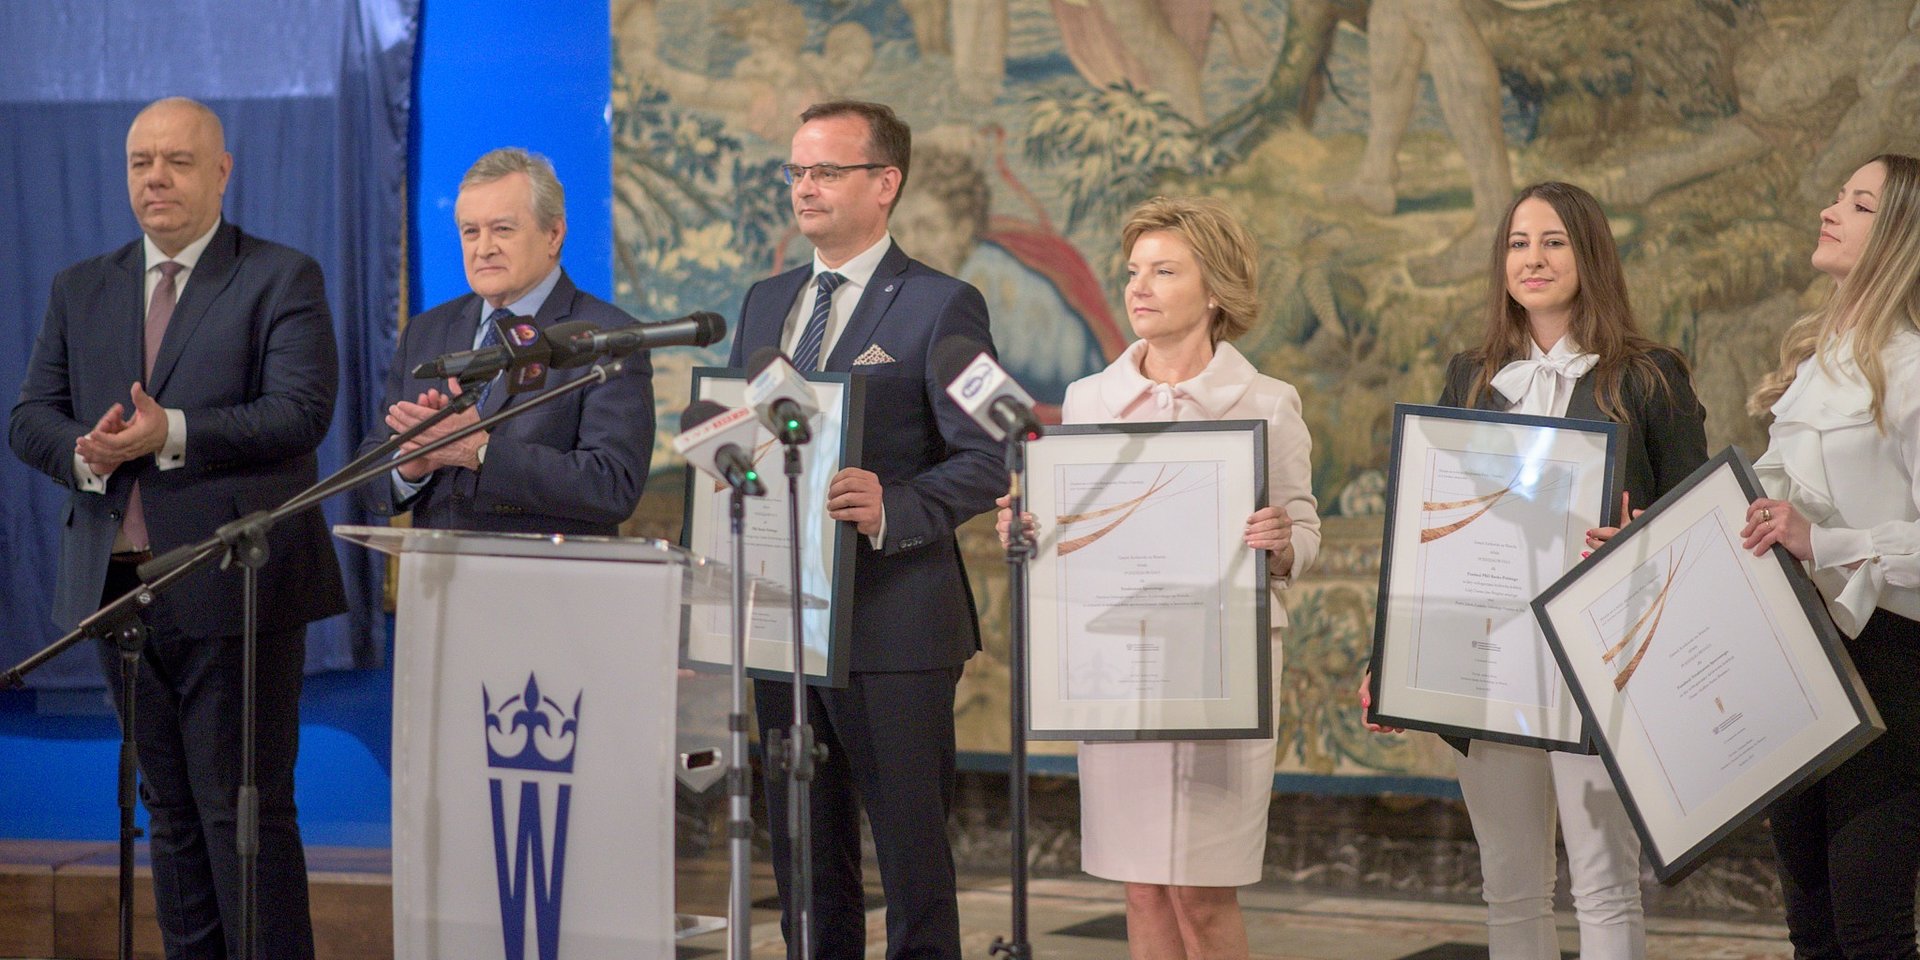 PKO Bank Polski partnerem strategicznym Zamku Królewskiego na Wawelu